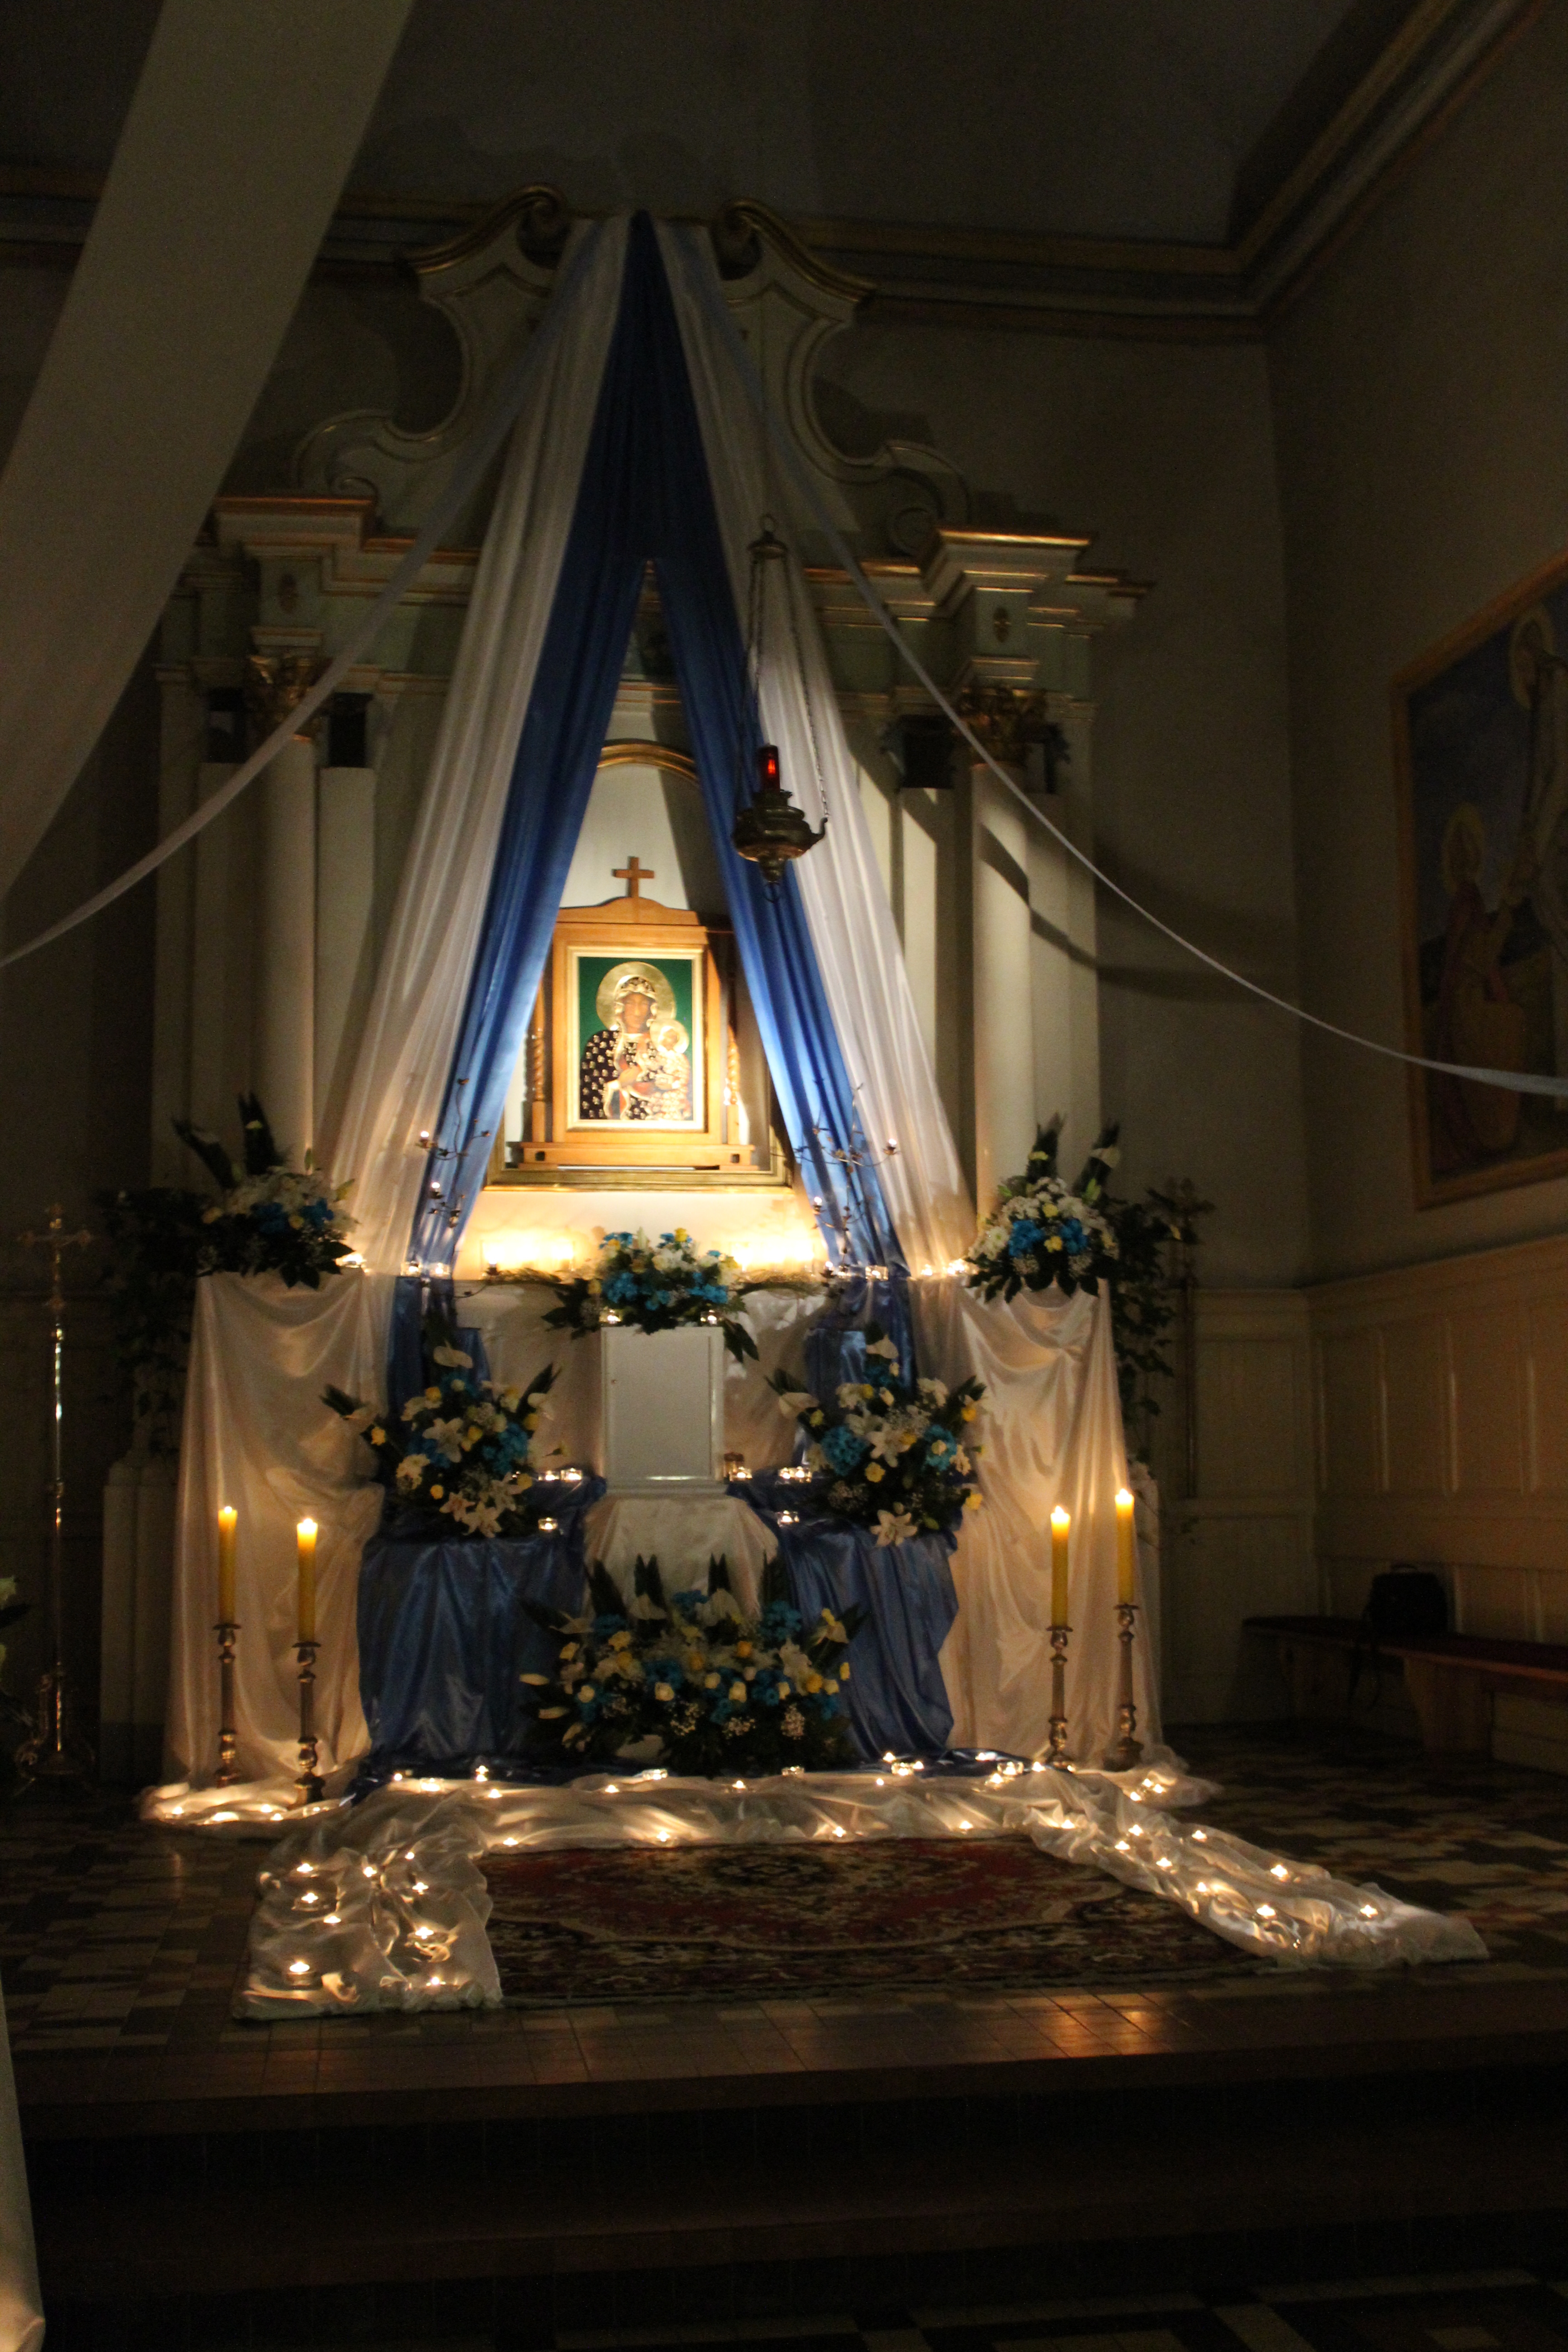 IMG 6585 - Druga rocznica nawiedzenia obrazu Matki Boskiej Częstochowskiej